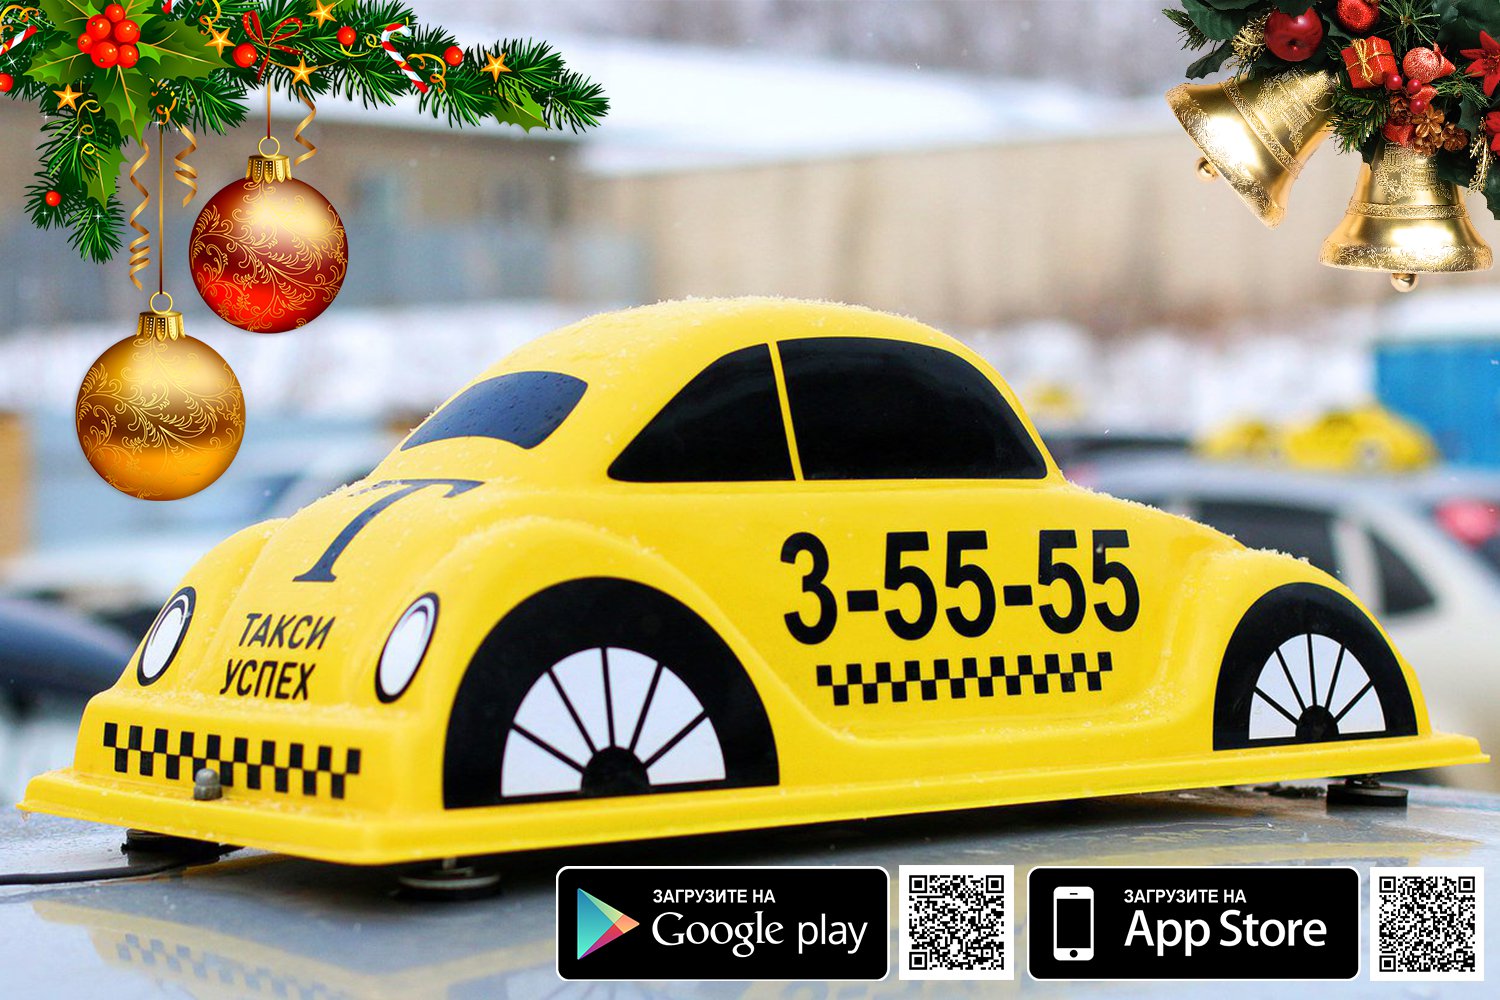 Такси «Успех» поздравляет с Новым годом!